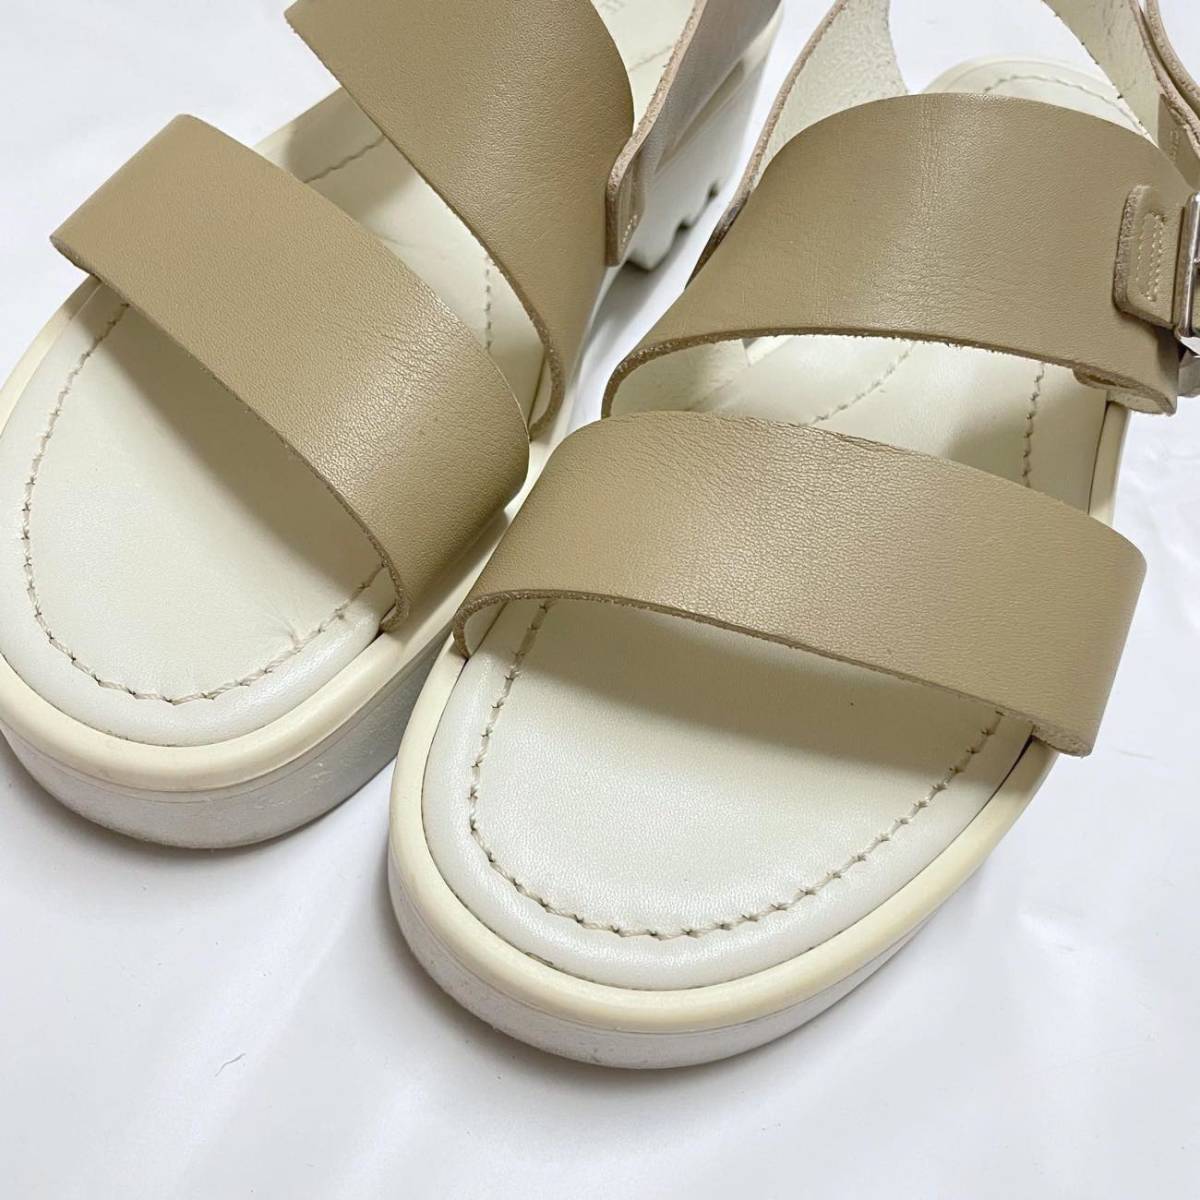 FOOT THE COACHERo- Rally специальный заказ 20 год весна лето ремень сандалии кожа обувь обычная цена 46,200 иен 8.5(26.5cm) foot The Coach .- кожа обувь мужской 